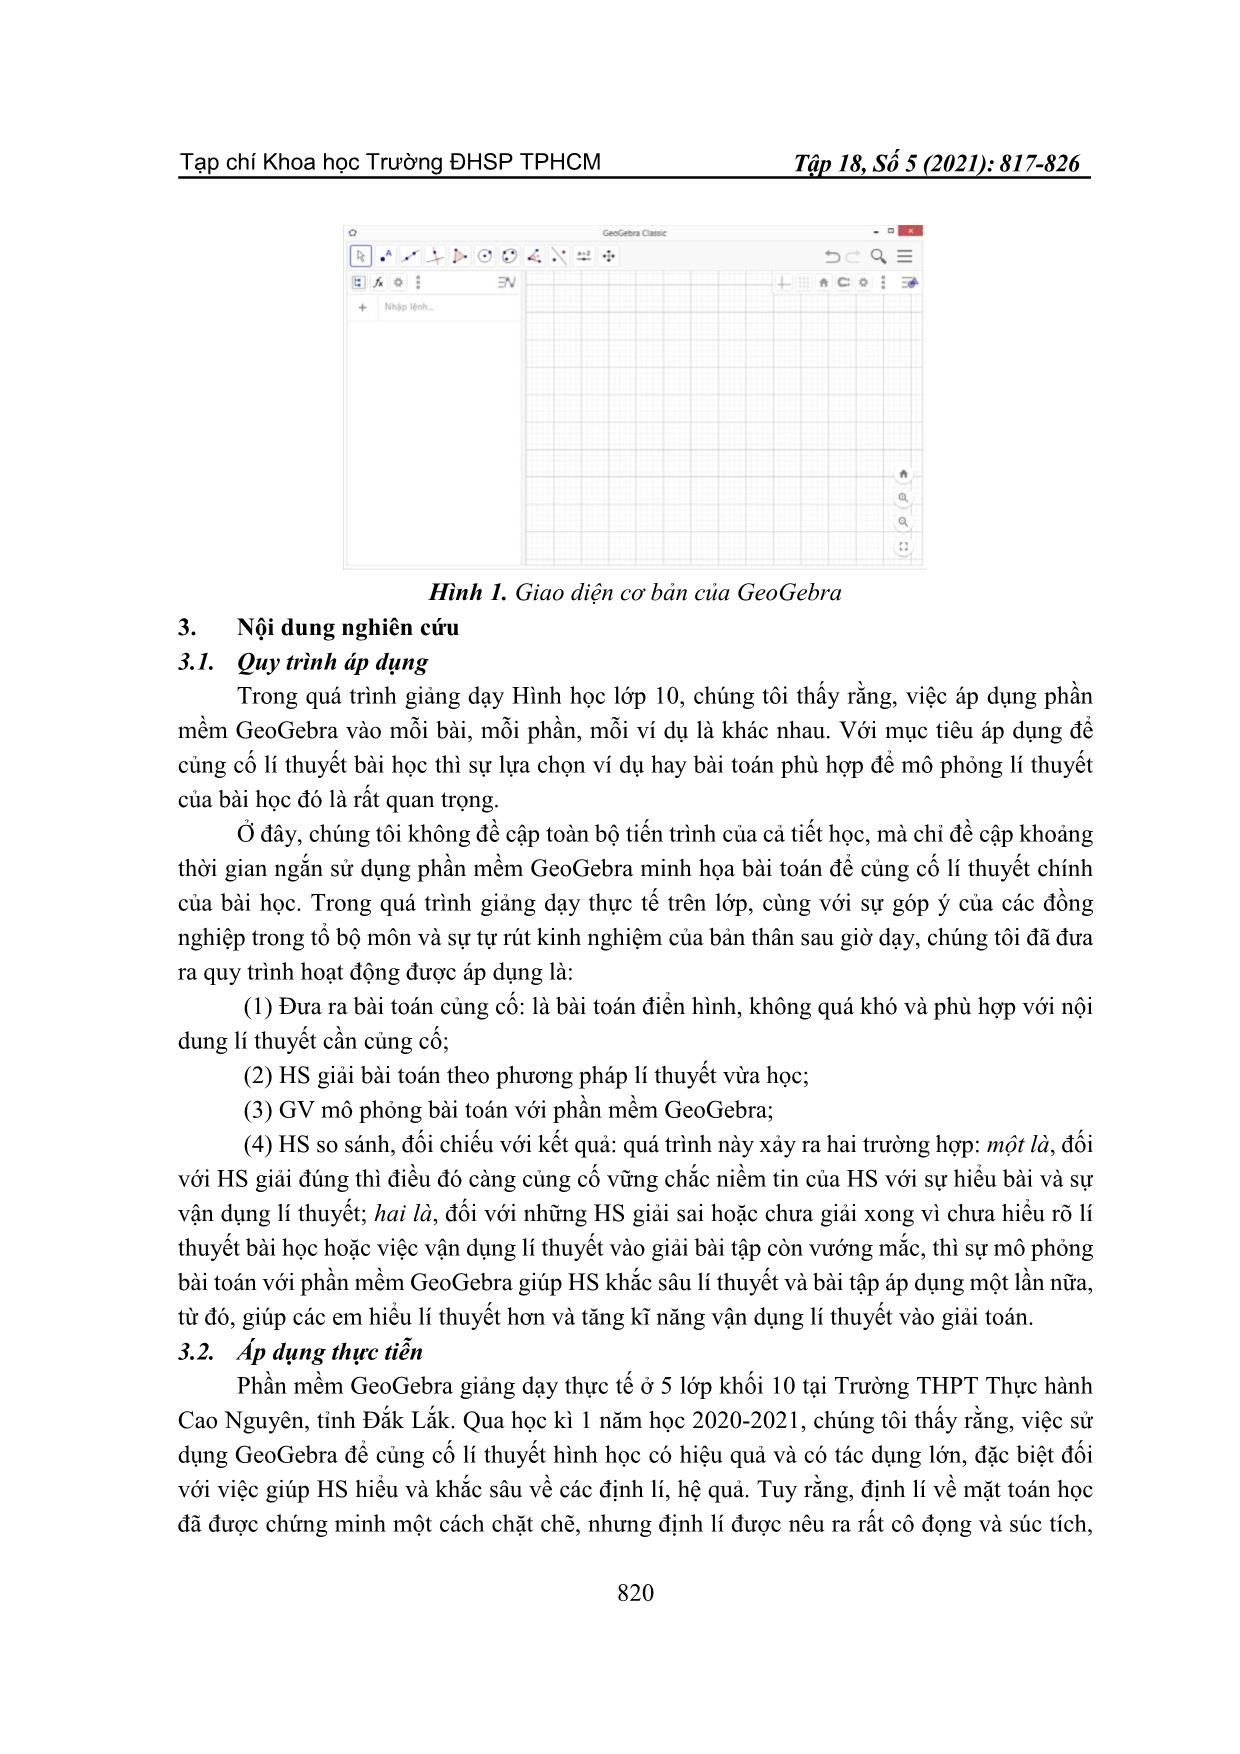 Sử dụng Geogebra để củng cố lí thuyết hình học trang 4